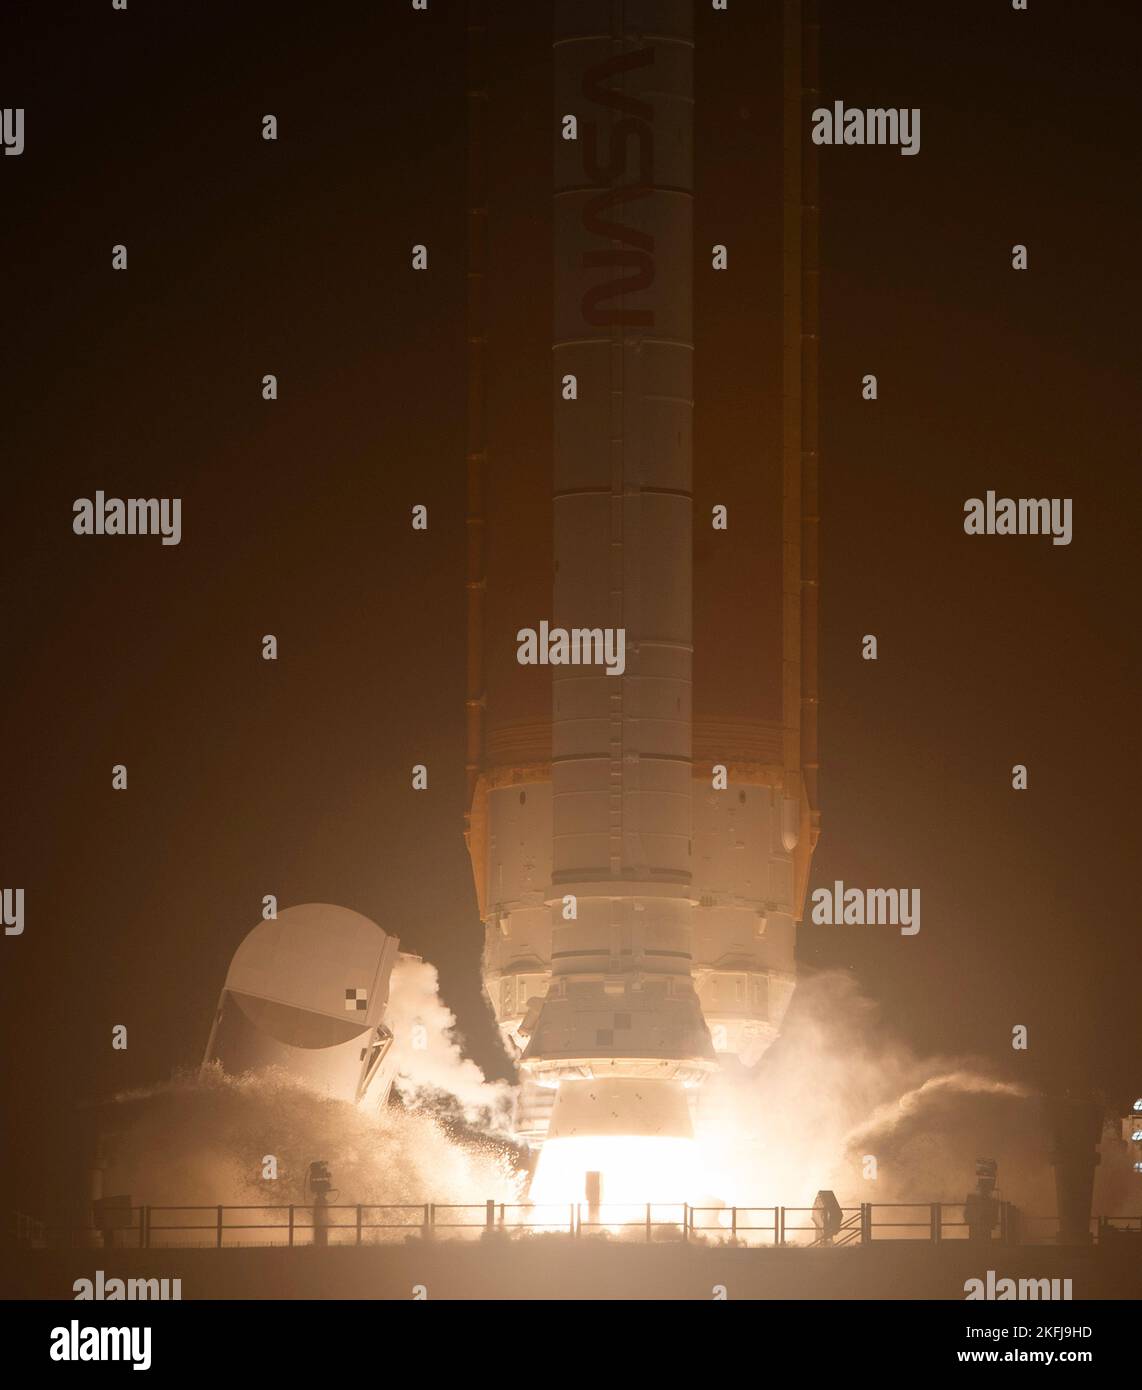 Centro Espacial Kennedy, Estados Unidos de América. 16 de noviembre de 2022. Las llamas se vierten desde los enormes propulsores de cohetes sólidos de elevación súper pesada del Sistema de Lanzamiento Espacial Artemis I de la NASA, que lleva la nave espacial Orion, mientras se despega de la plataforma de lanzamiento 39B en el Centro Espacial Kennedy, el 16 de noviembre de 2022, en Cabo Cañaveral, Florida. Después de varios intentos fallidos, la prueba de vuelo sin tripulación se levantó en la primera prueba de la misión de exploración del espacio profundo. Crédito: Joel Kowsky/NASA/Alamy Live News Foto de stock